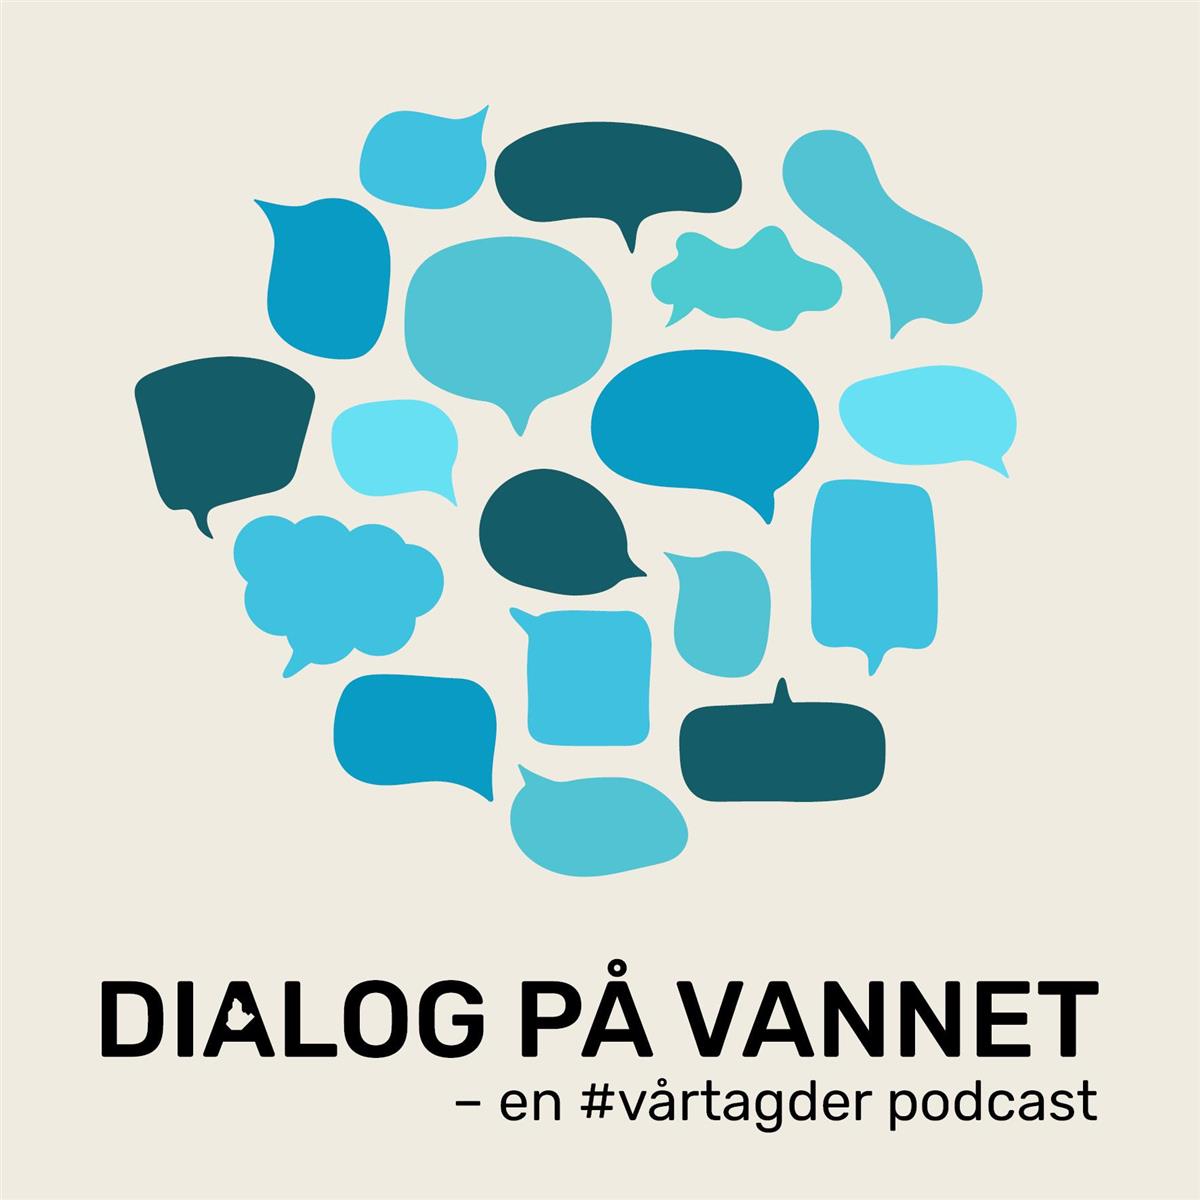 podcasten Dialog på vannet. Grafikk - Klikk for stort bilde